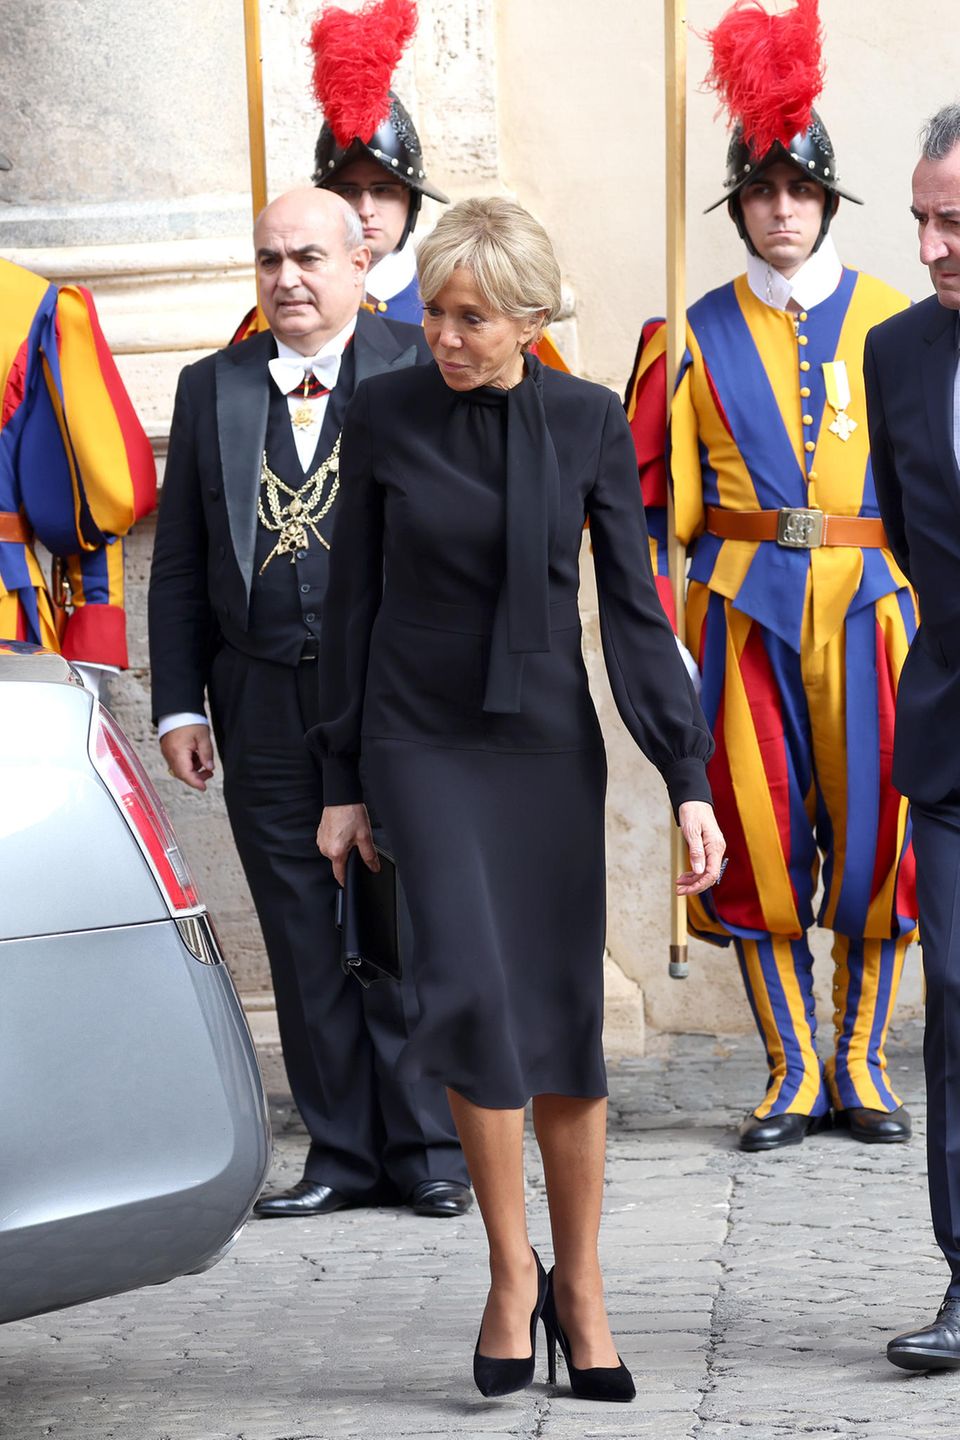 Brigitte Macron begleitet ihren Gatten, Präsident Emmanuel Macron, zu einer privaten Audienz bei Papst Franziskus im Vatikan. Dem Anlass angemessen, zeigt sich die Première Dame in einem schwarzen Kleid in Midi-Länge. Dabei ist das Kleid durch den leichten, fließenden Stoff und den gebundenen Schluppenkragen alles andere als langweilig. Die Clutch von Louis Vuitton und Pumps passt sie farblich an das Kleid an, während sie das Haar seriös zum Dutt gebunden trägt.